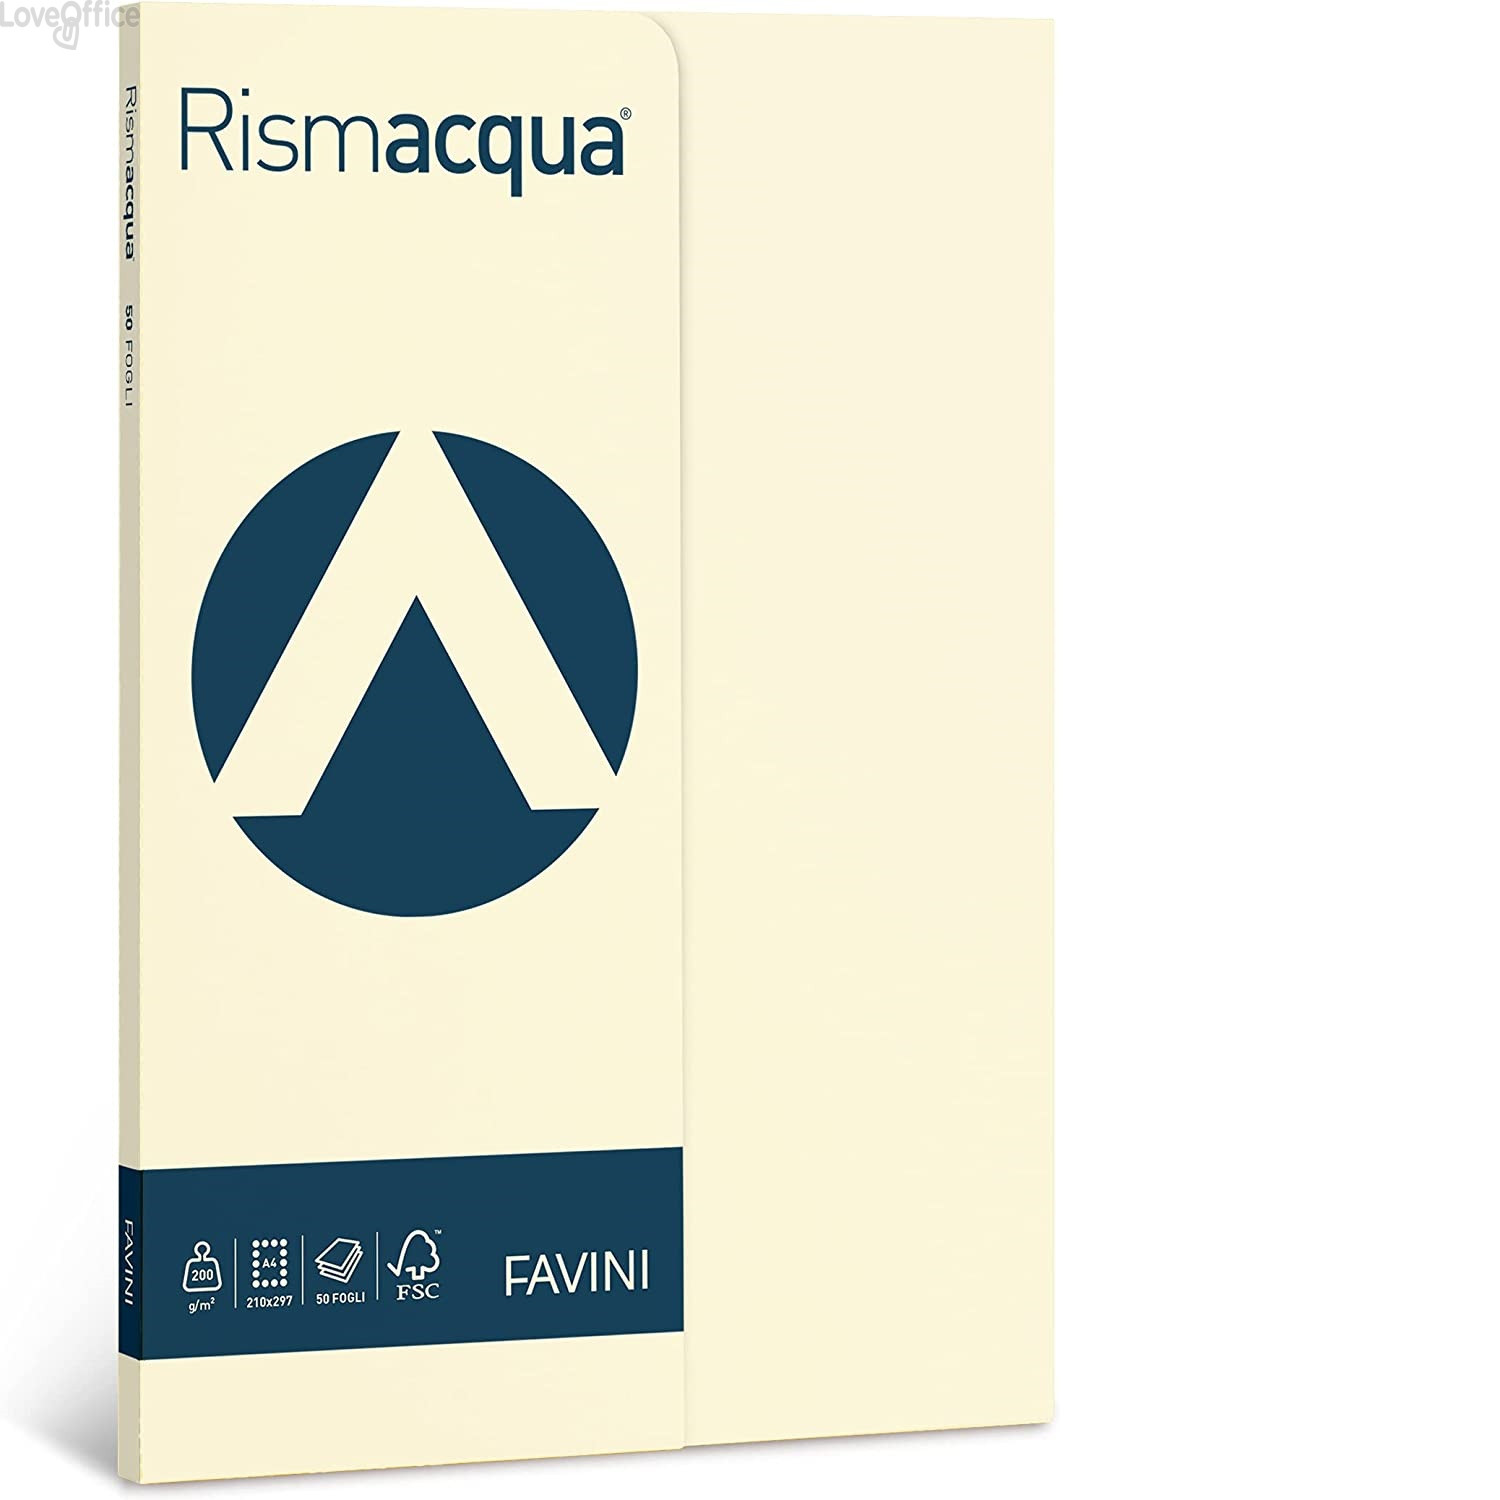 Risma carta colorata - rismette Rismacqua Favini Small - A4 - 90 g/m² - Avorio(100 fogli fogli)